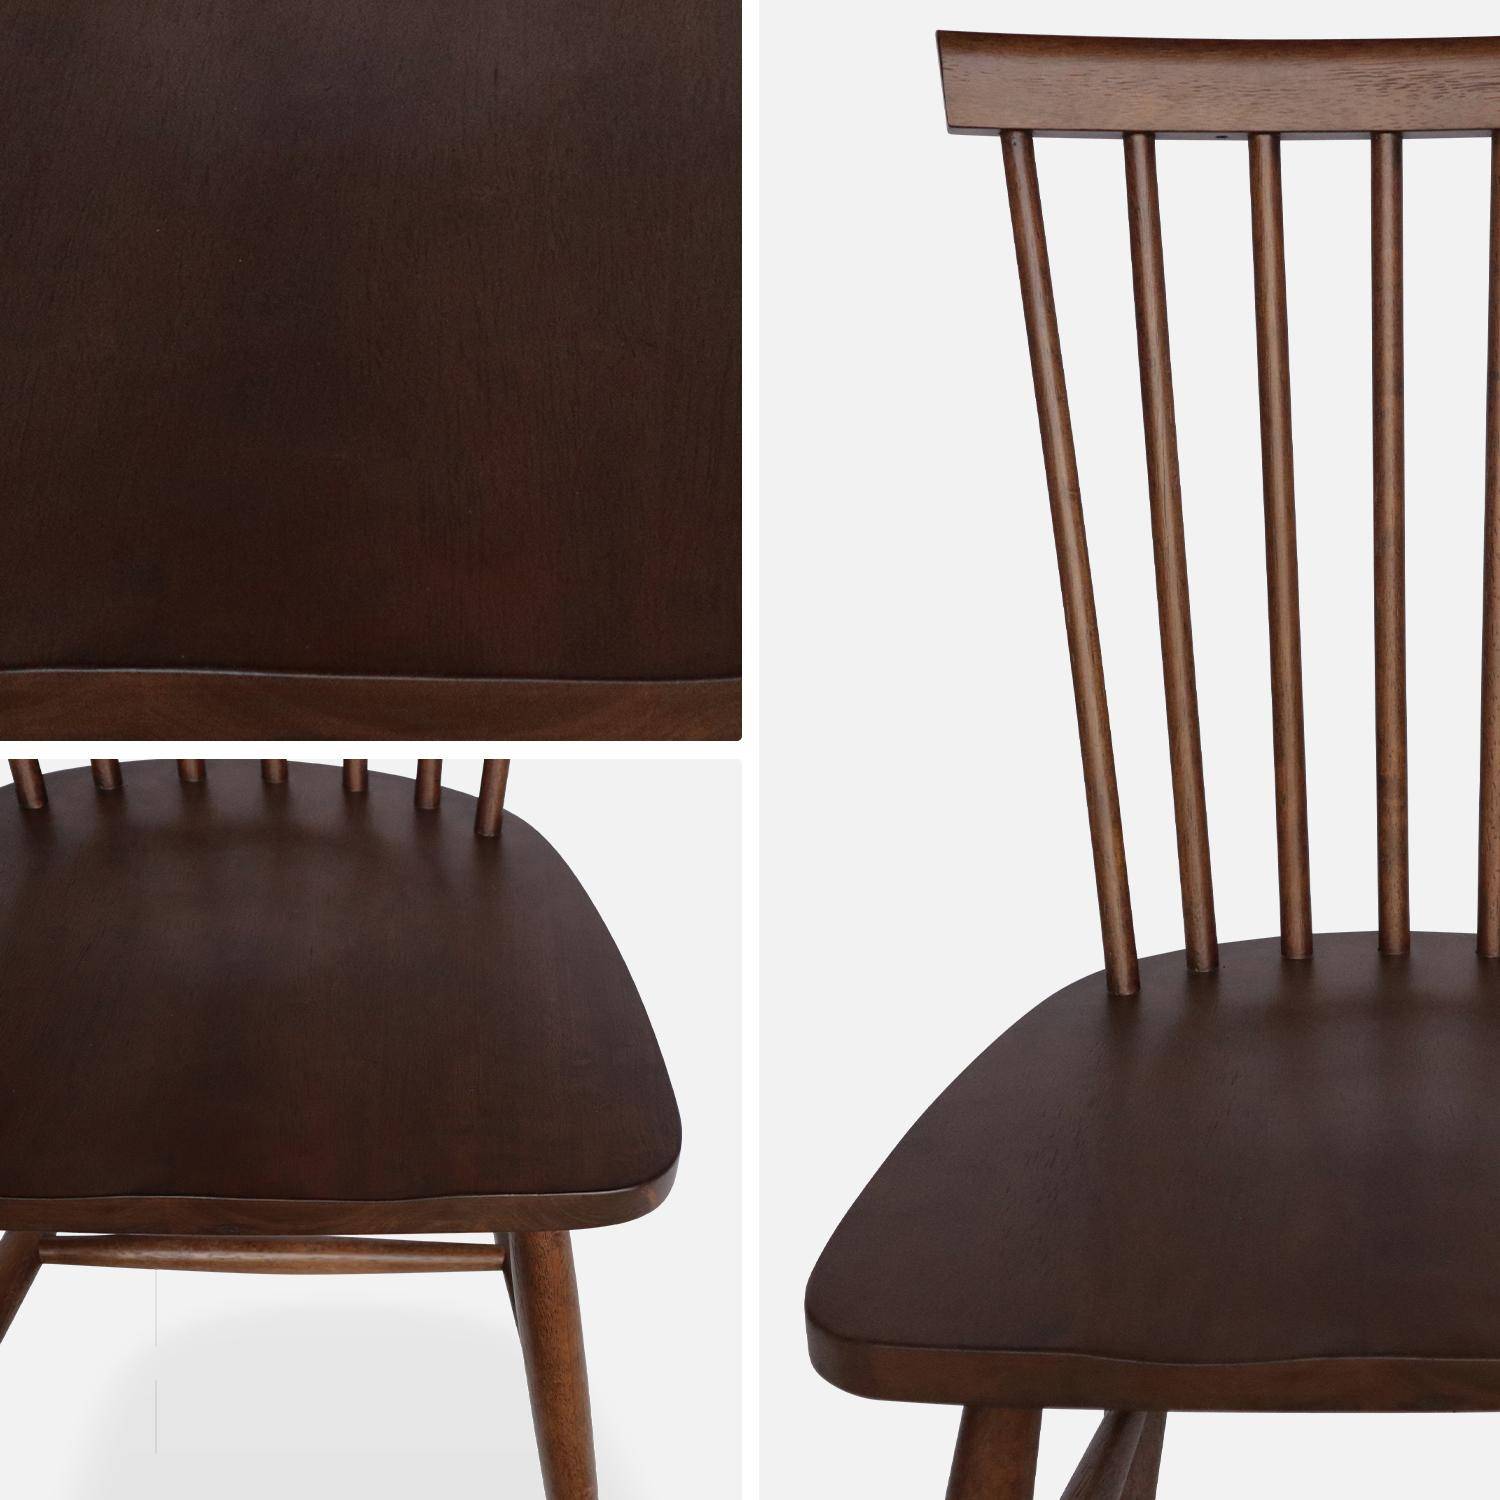 Conjunto de 2 cadeiras de nogueira com ripas de madeira de borracha, ROMIE, L 50,8 x P 44,2 x A 90cm.,sweeek,Photo7